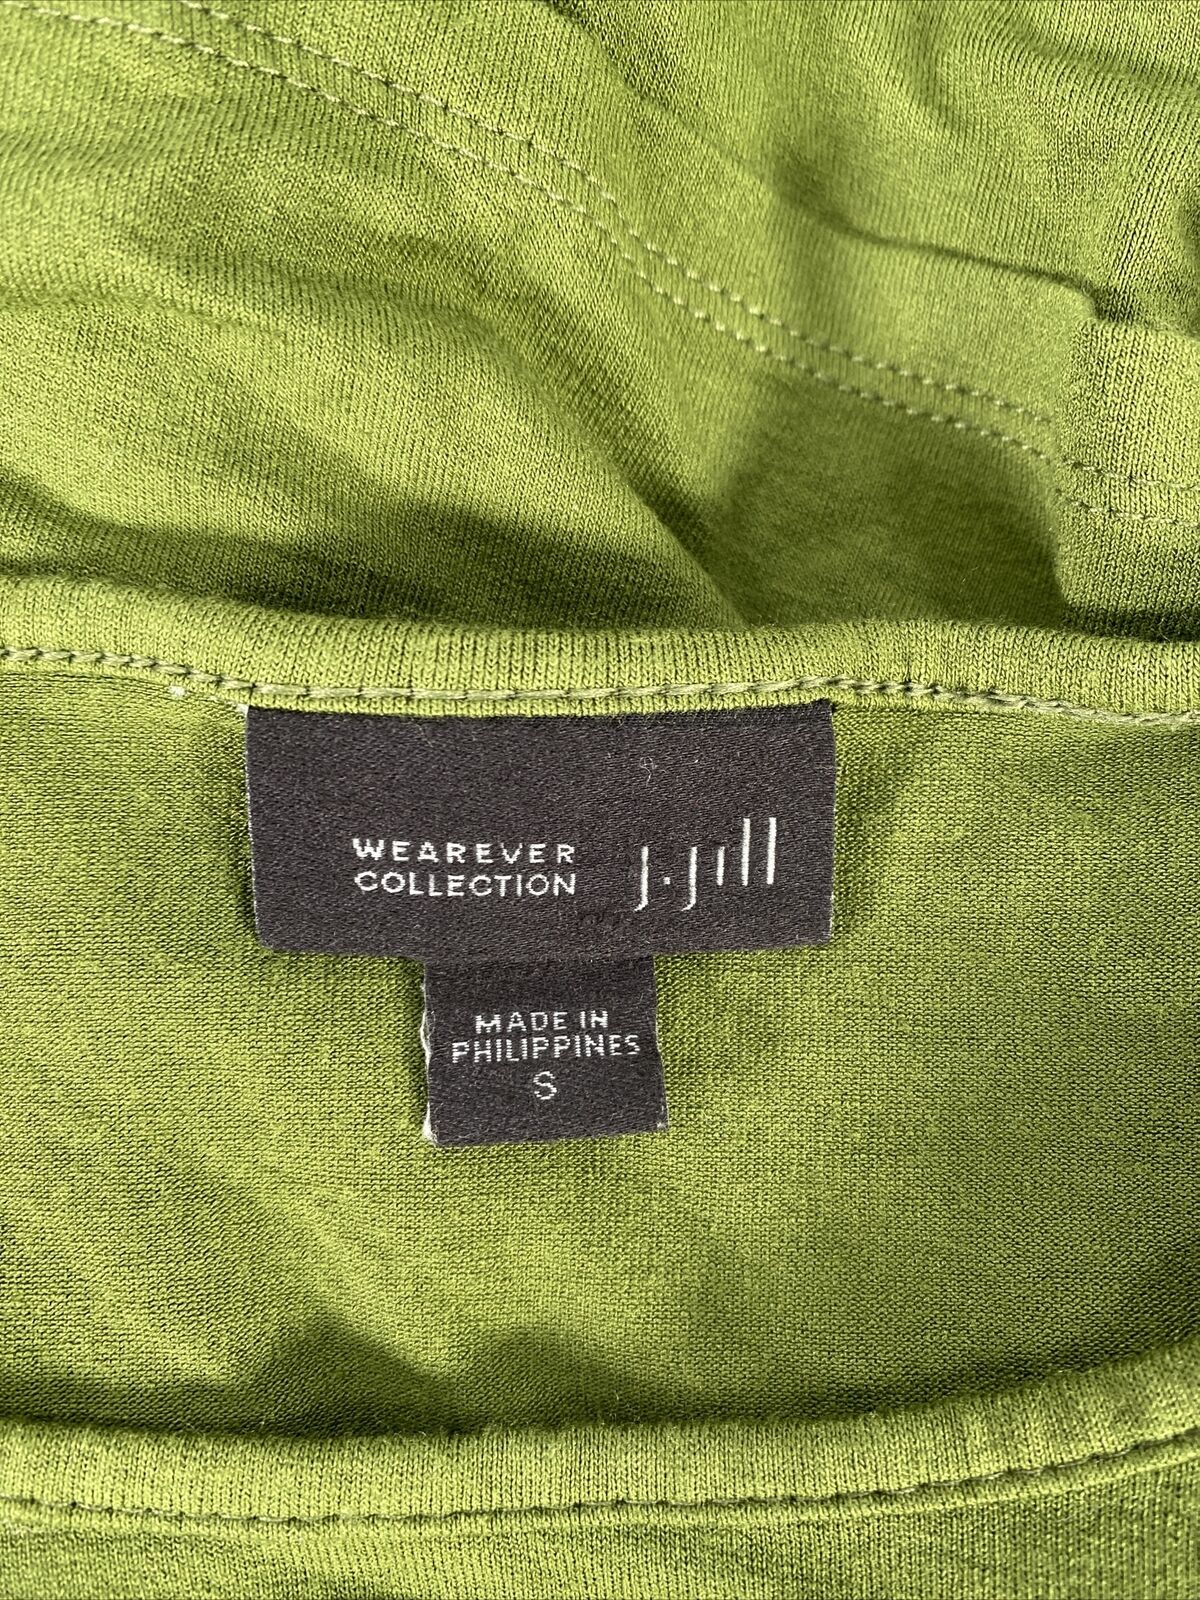 J. Jill Women's Green Long Sleeve Wearever Collection Shirt - S